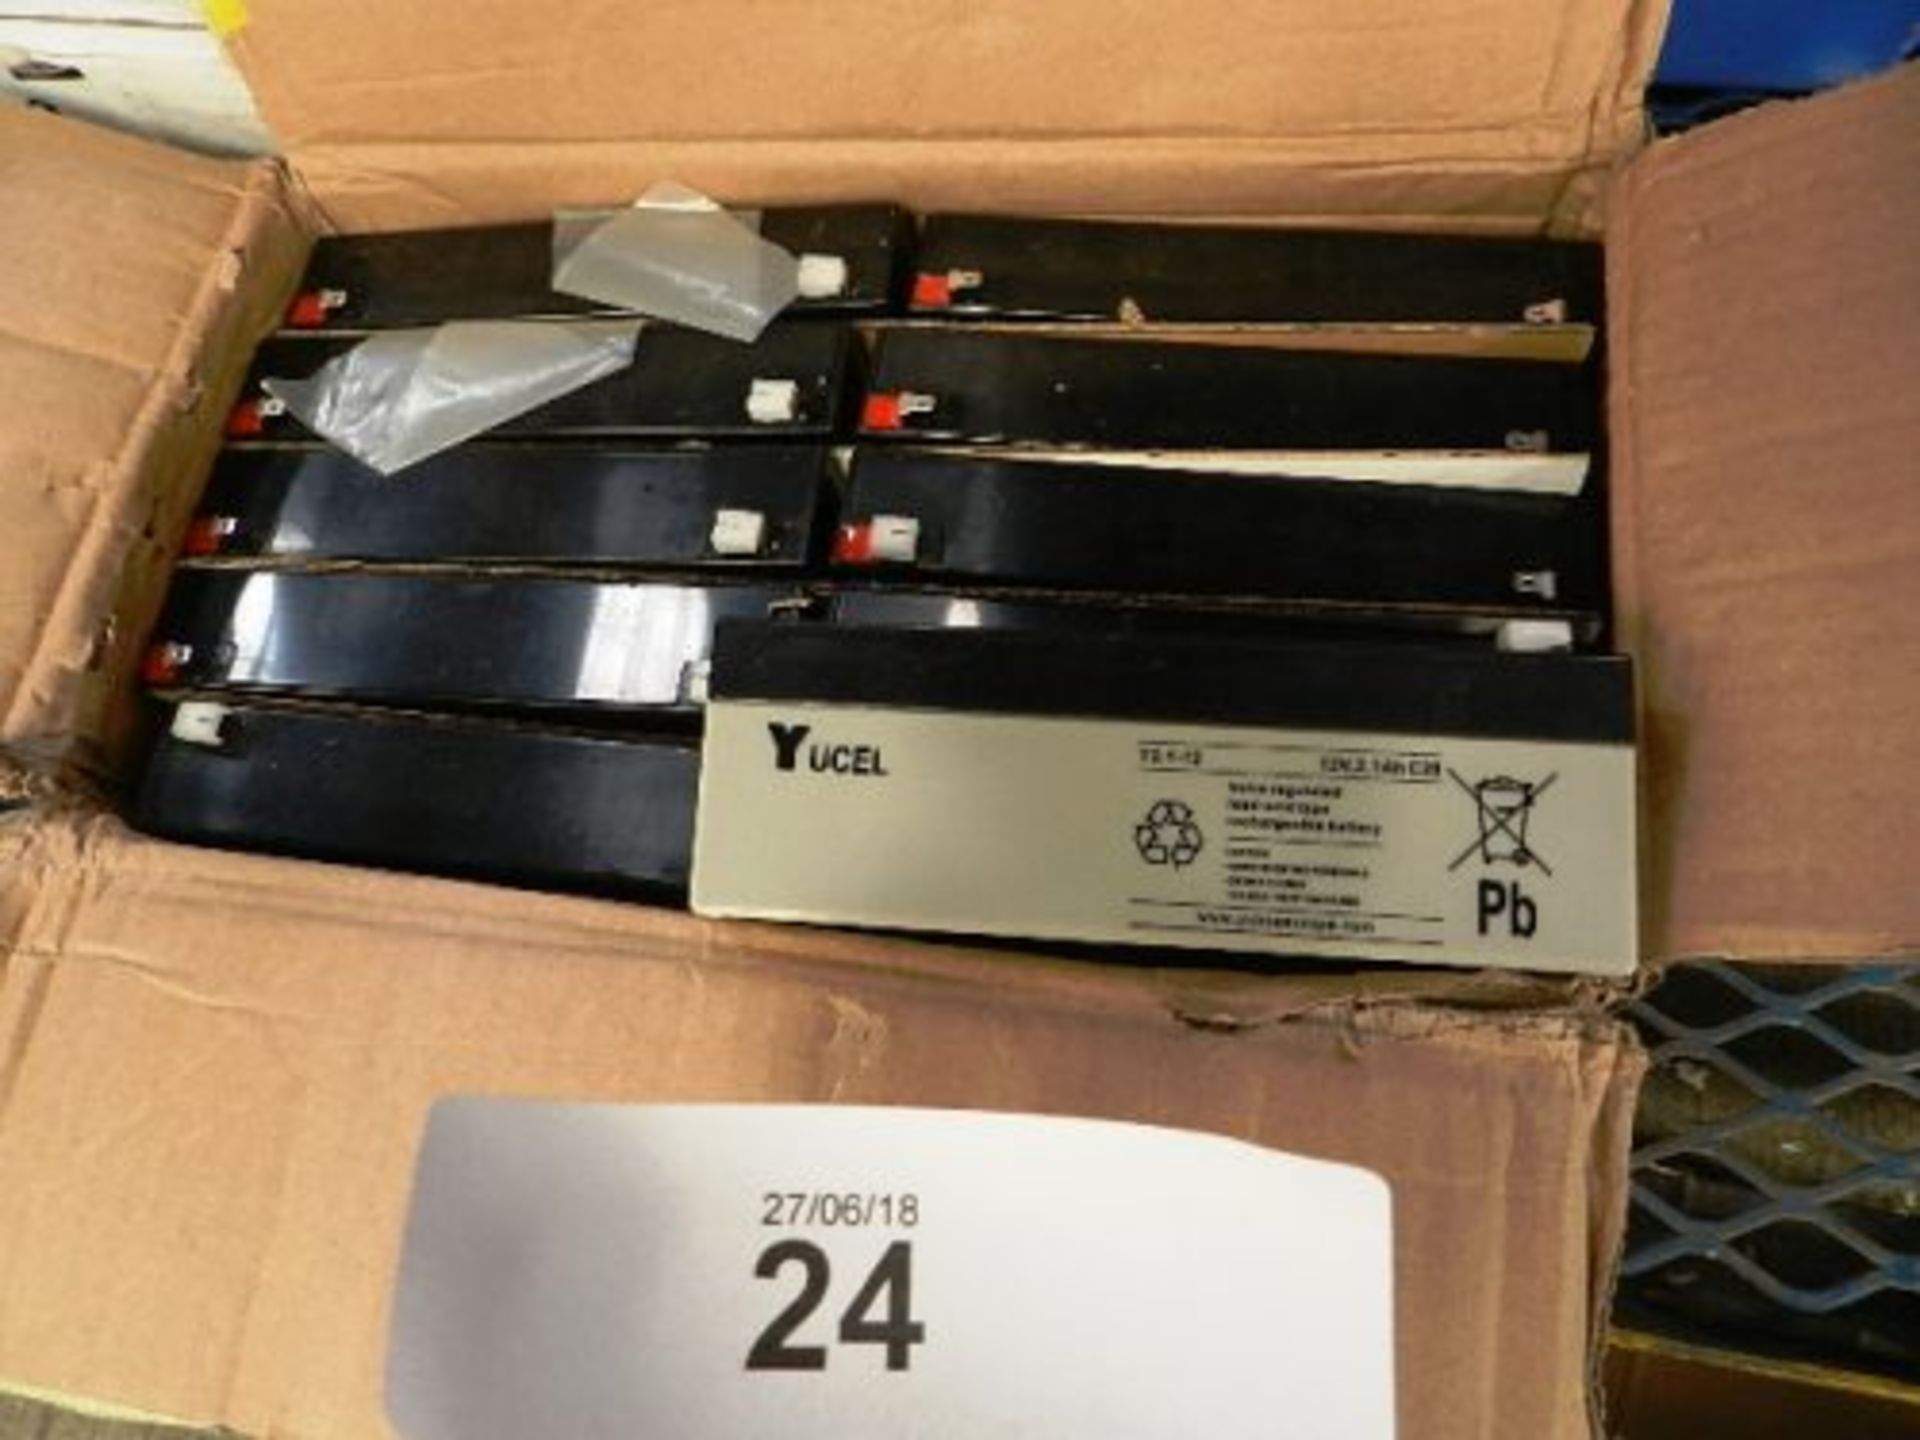 20 x Yucel Y2 1.-12 12V 2.1ah batteries - New (TC8)